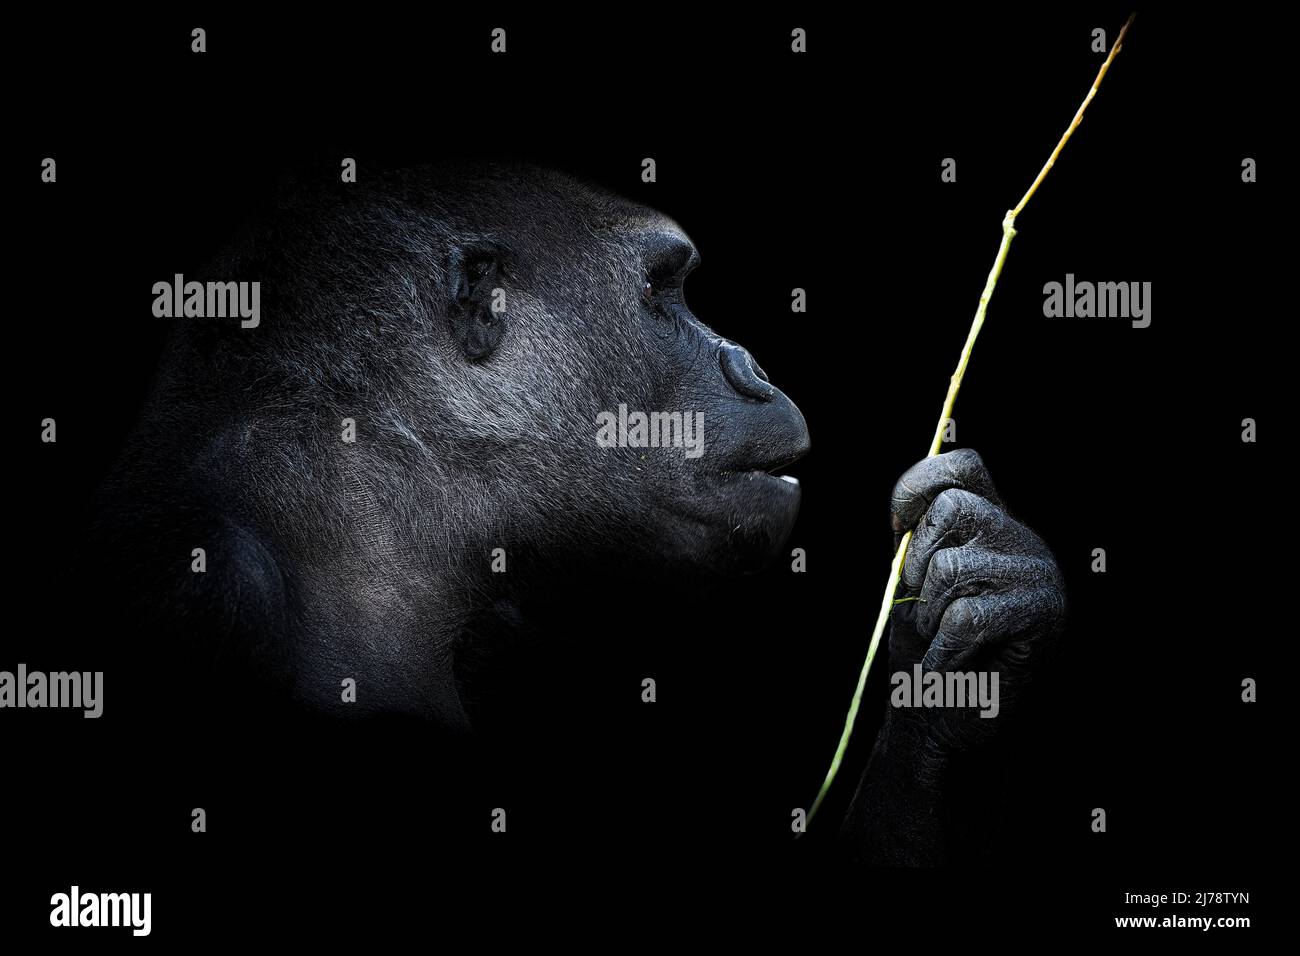 Ritratto di un gorilla lowland occidentale (GGG) da vicino. Silverback - maschio adulto di un gorilla in un habitat nativo. Giungla della Repubblica Centrafricana Foto Stock